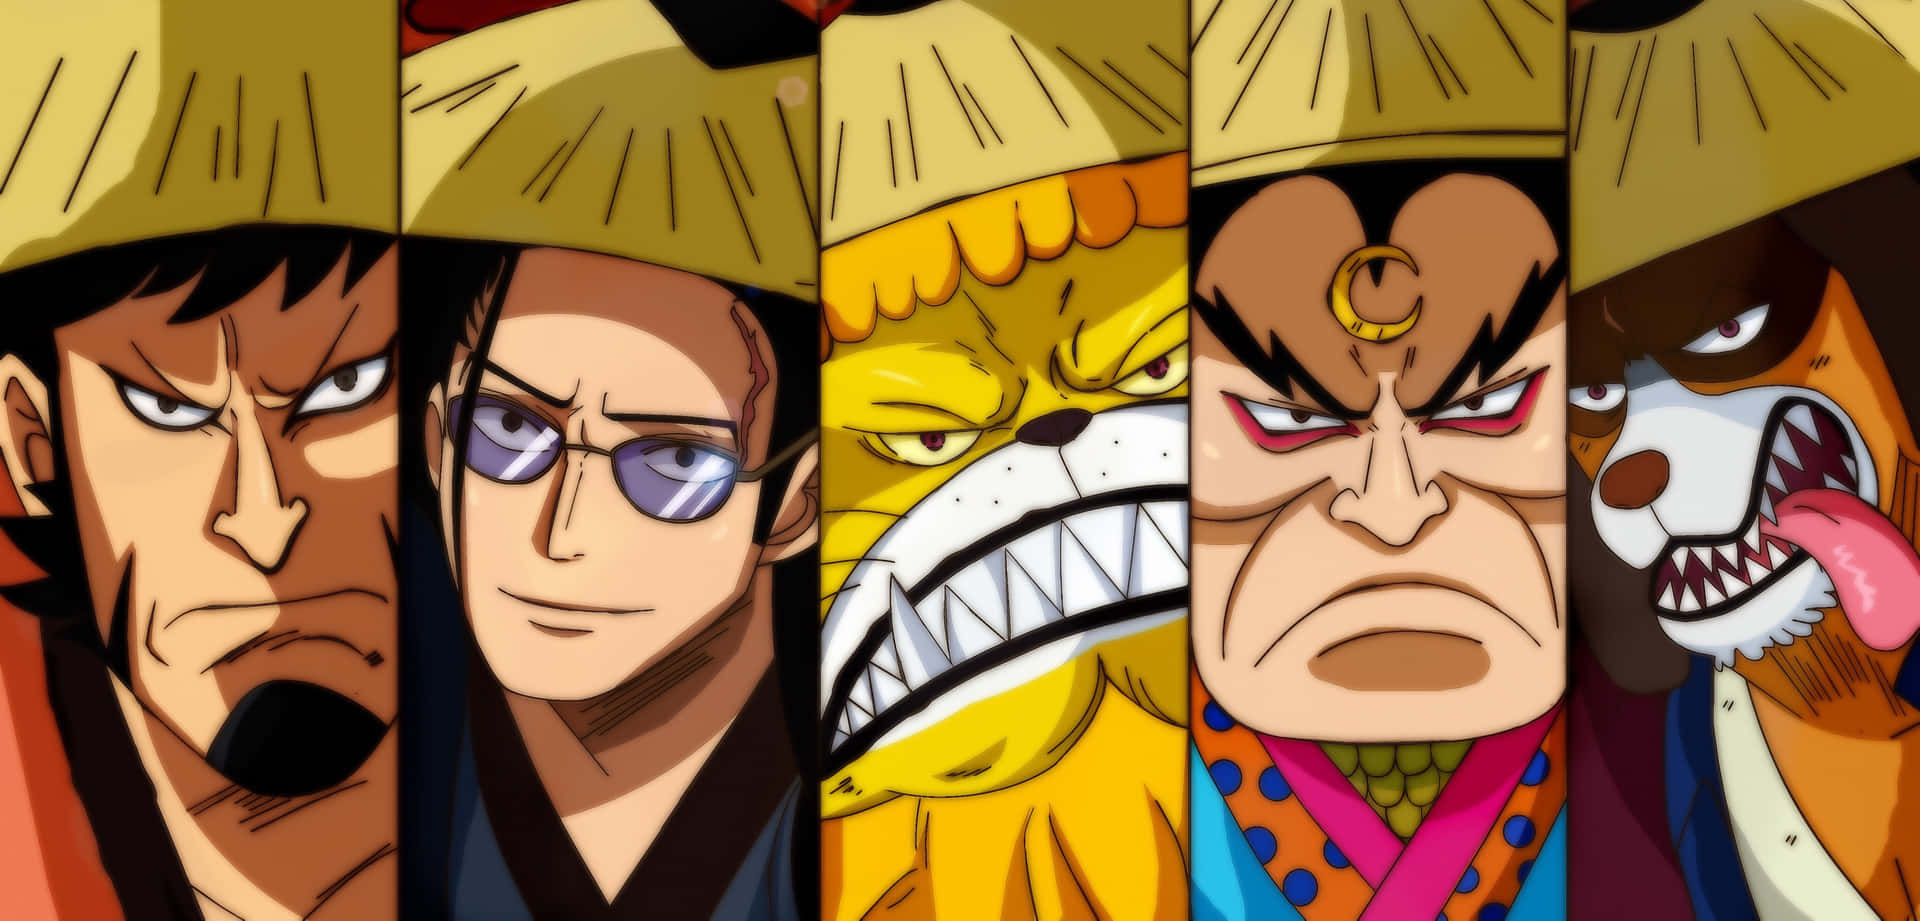 Umpapel De Parede Em Alta Definição Da Popular Série De Anime: One Piece.